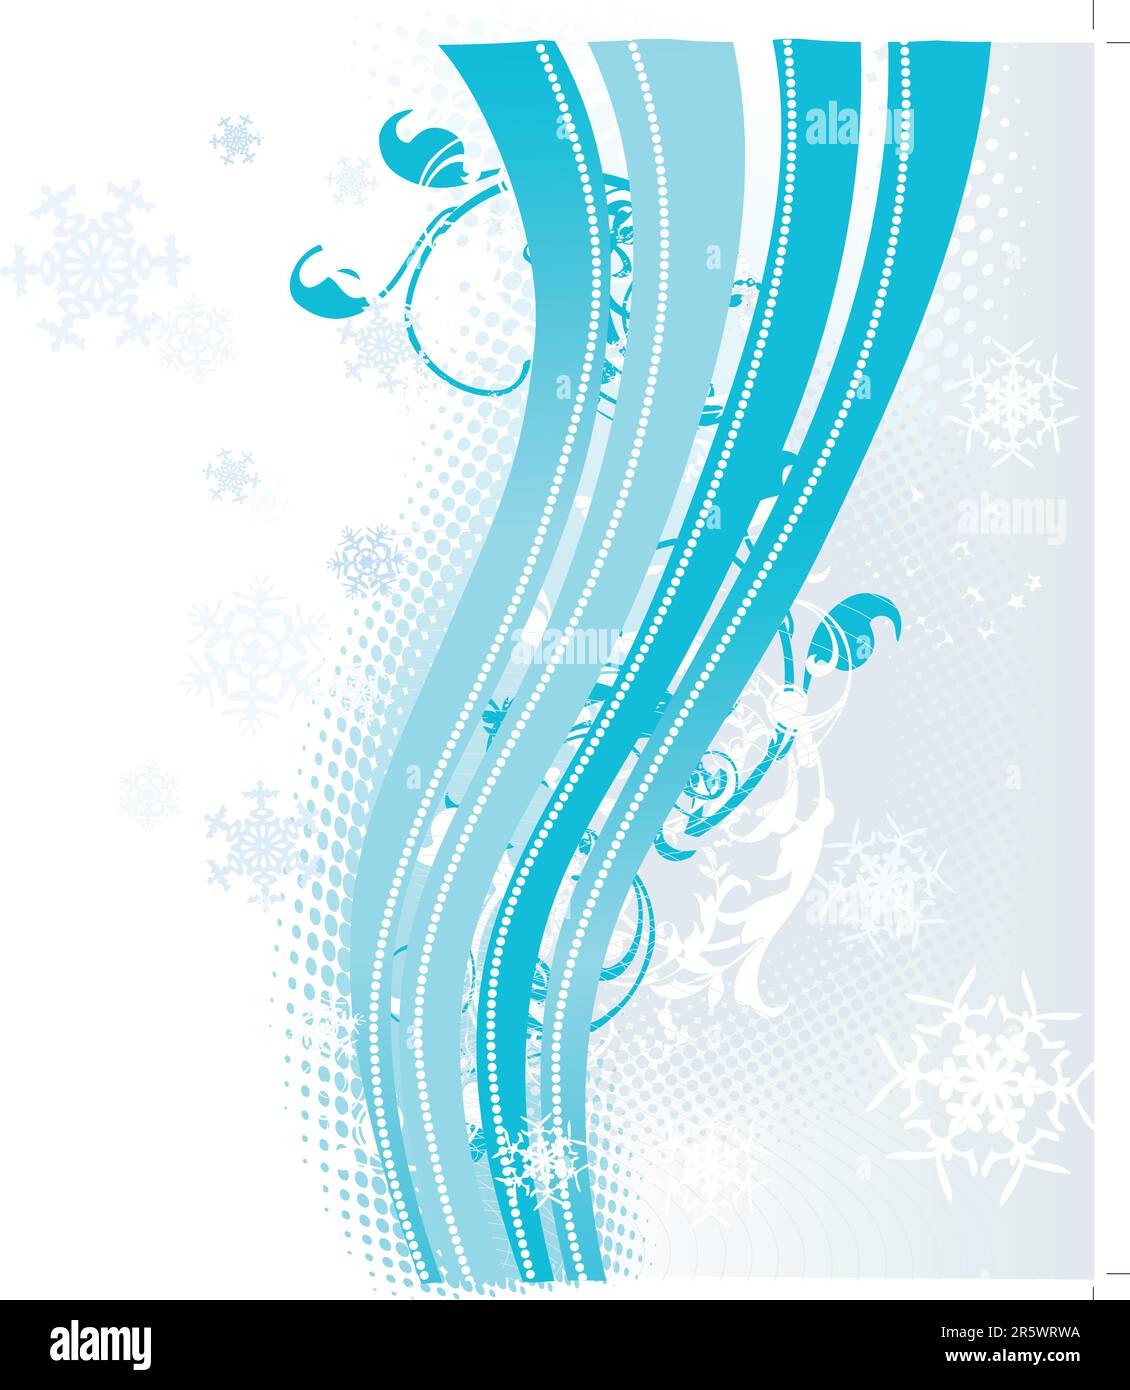 Surreale Schneeflocken-Design.  Blauer abstrakten Hintergrund mit Wellen, Bänder und Schneeflocken. Vektor-Illustration. Stock Vektor